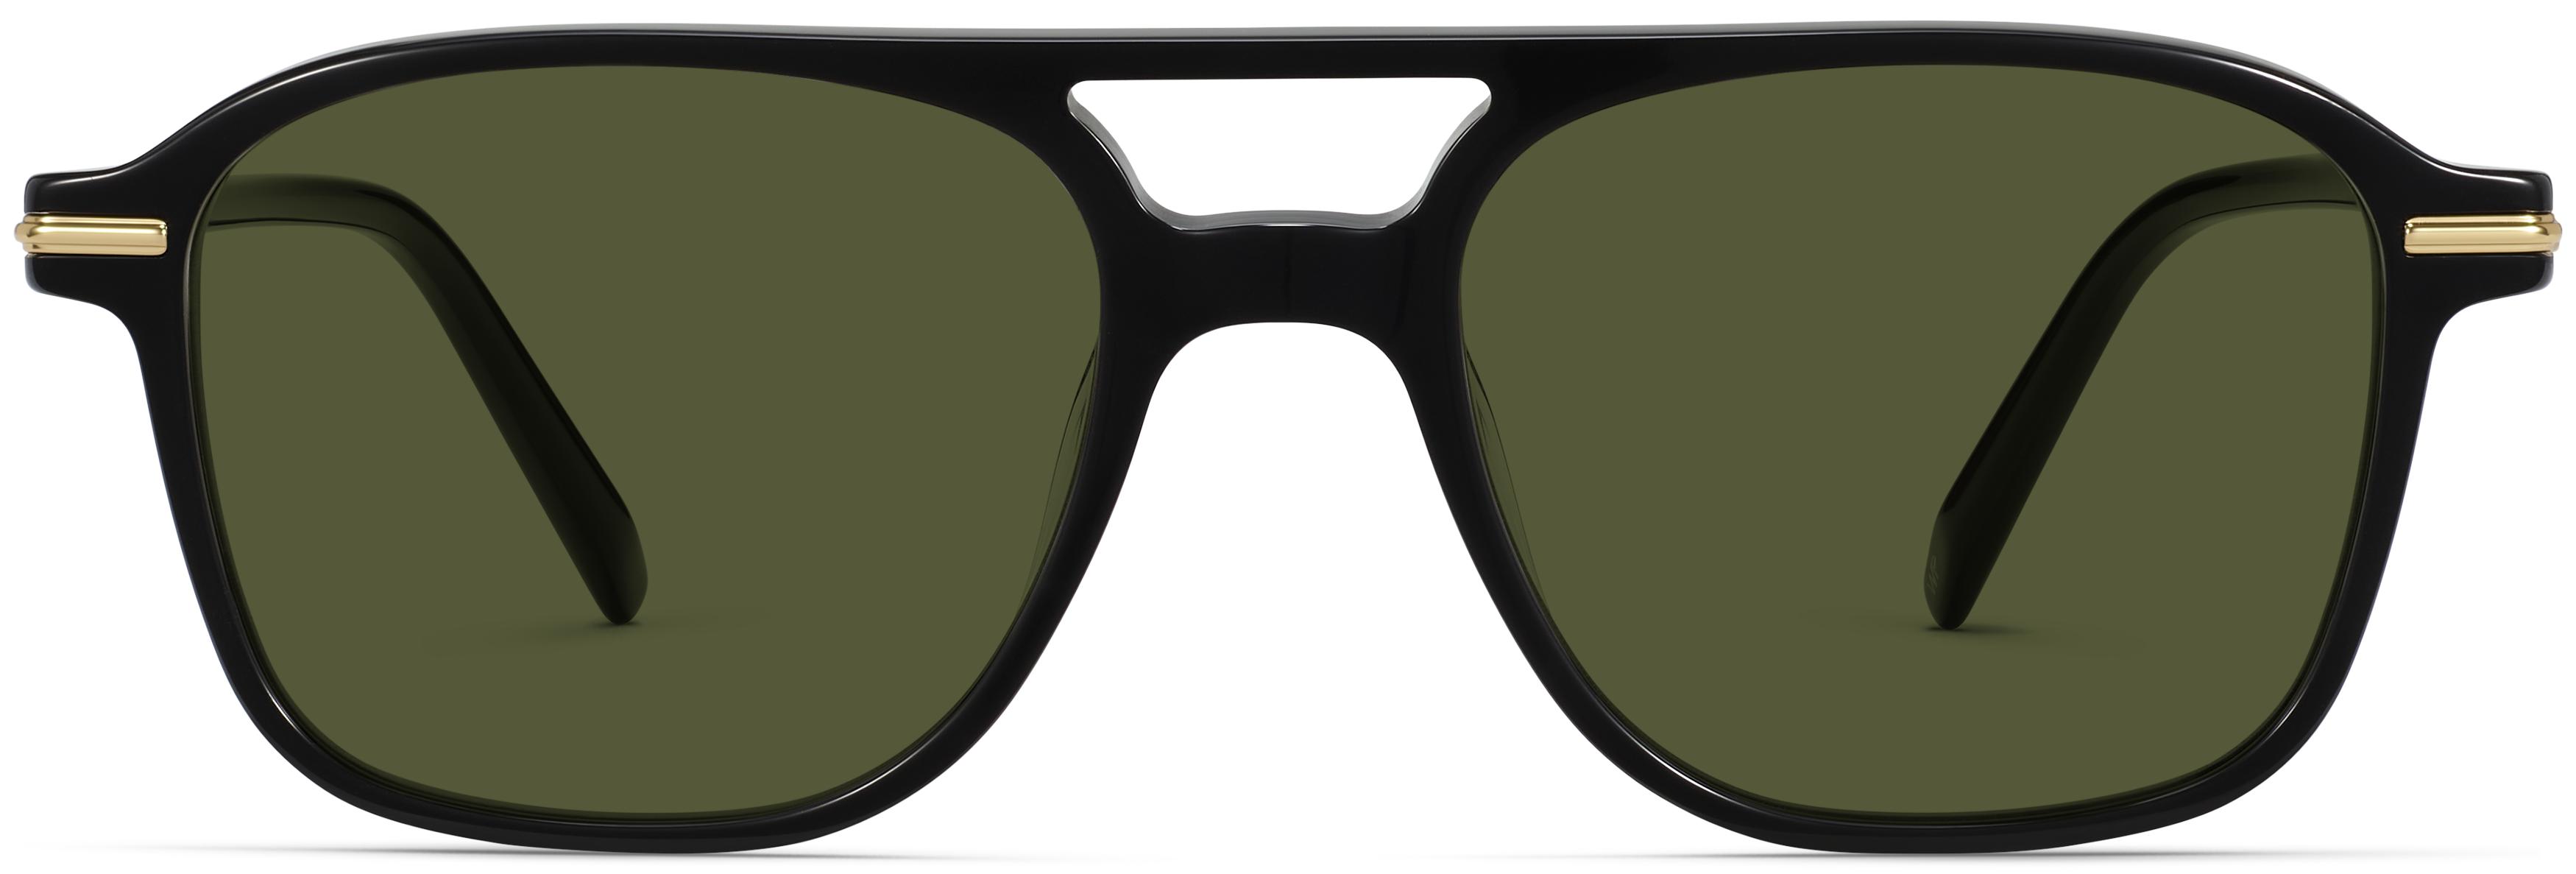 Printed Malibu Sunglasses